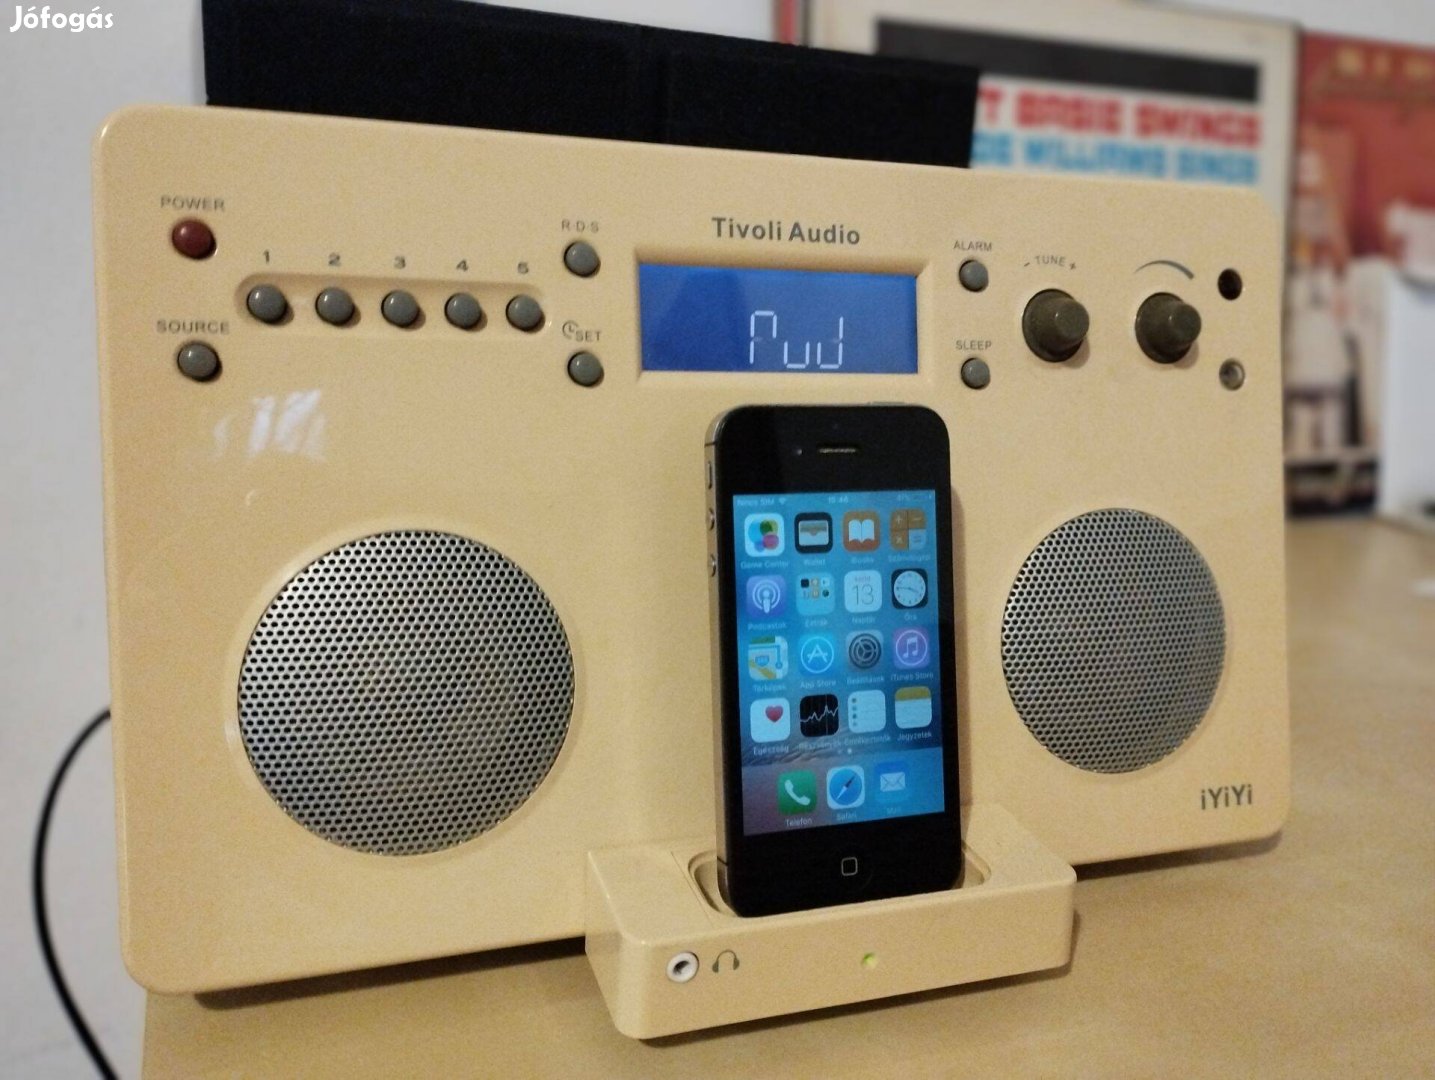 Tivoli Audio iyiyi sztereó rádió, ipad, iphone dokkoló, AUX és MIX